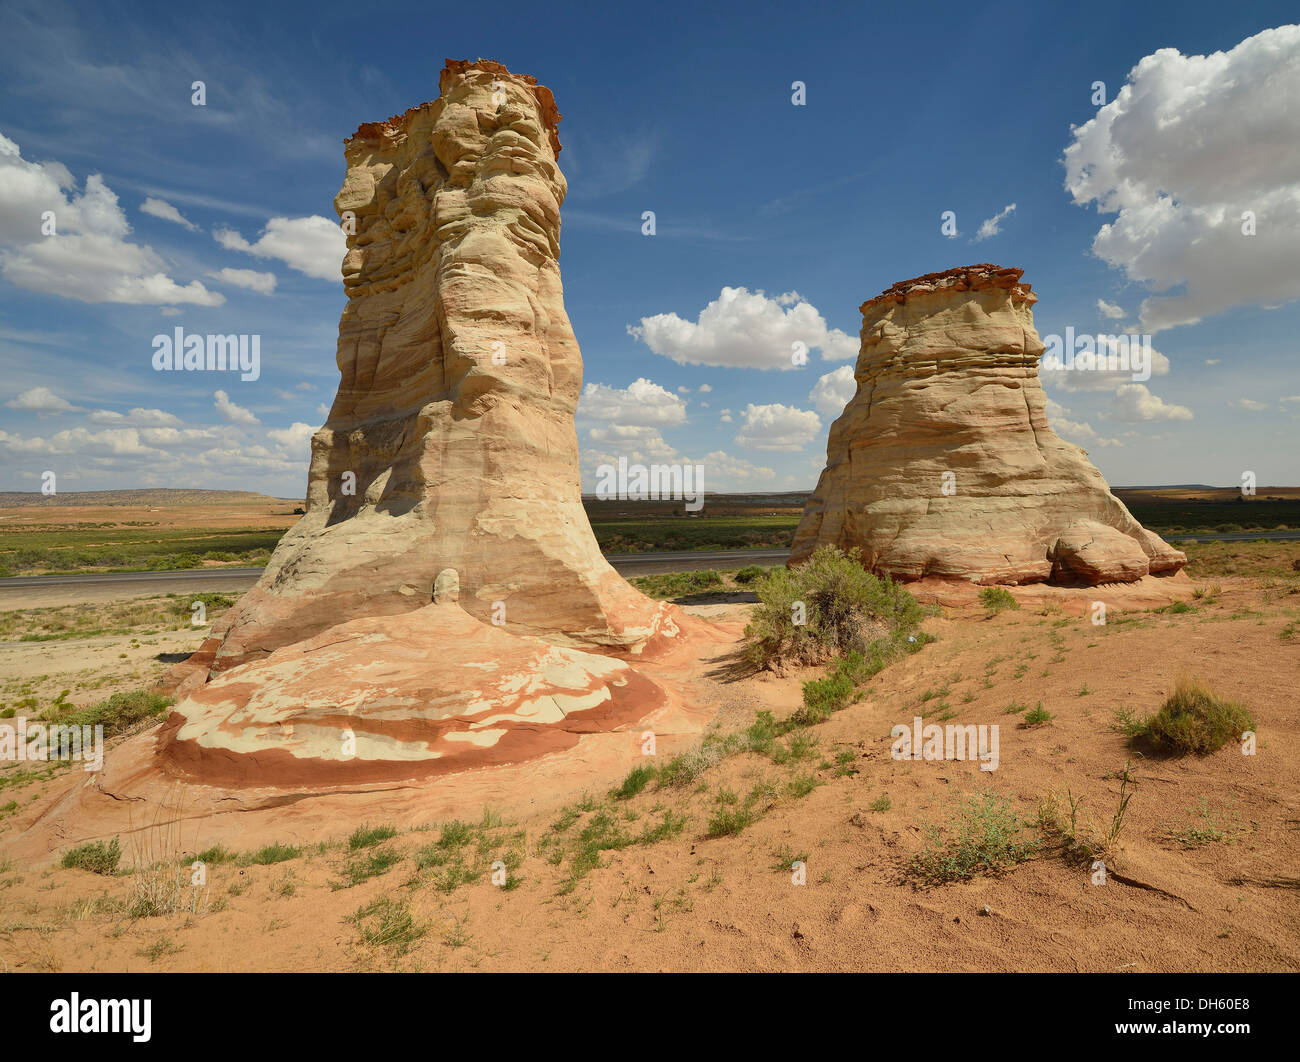 Pieds d'éléphants, une formation rock hoodoos érodés décoloré par les minéraux, Tonalea, Navajo Nation Réservation, Arizona Banque D'Images